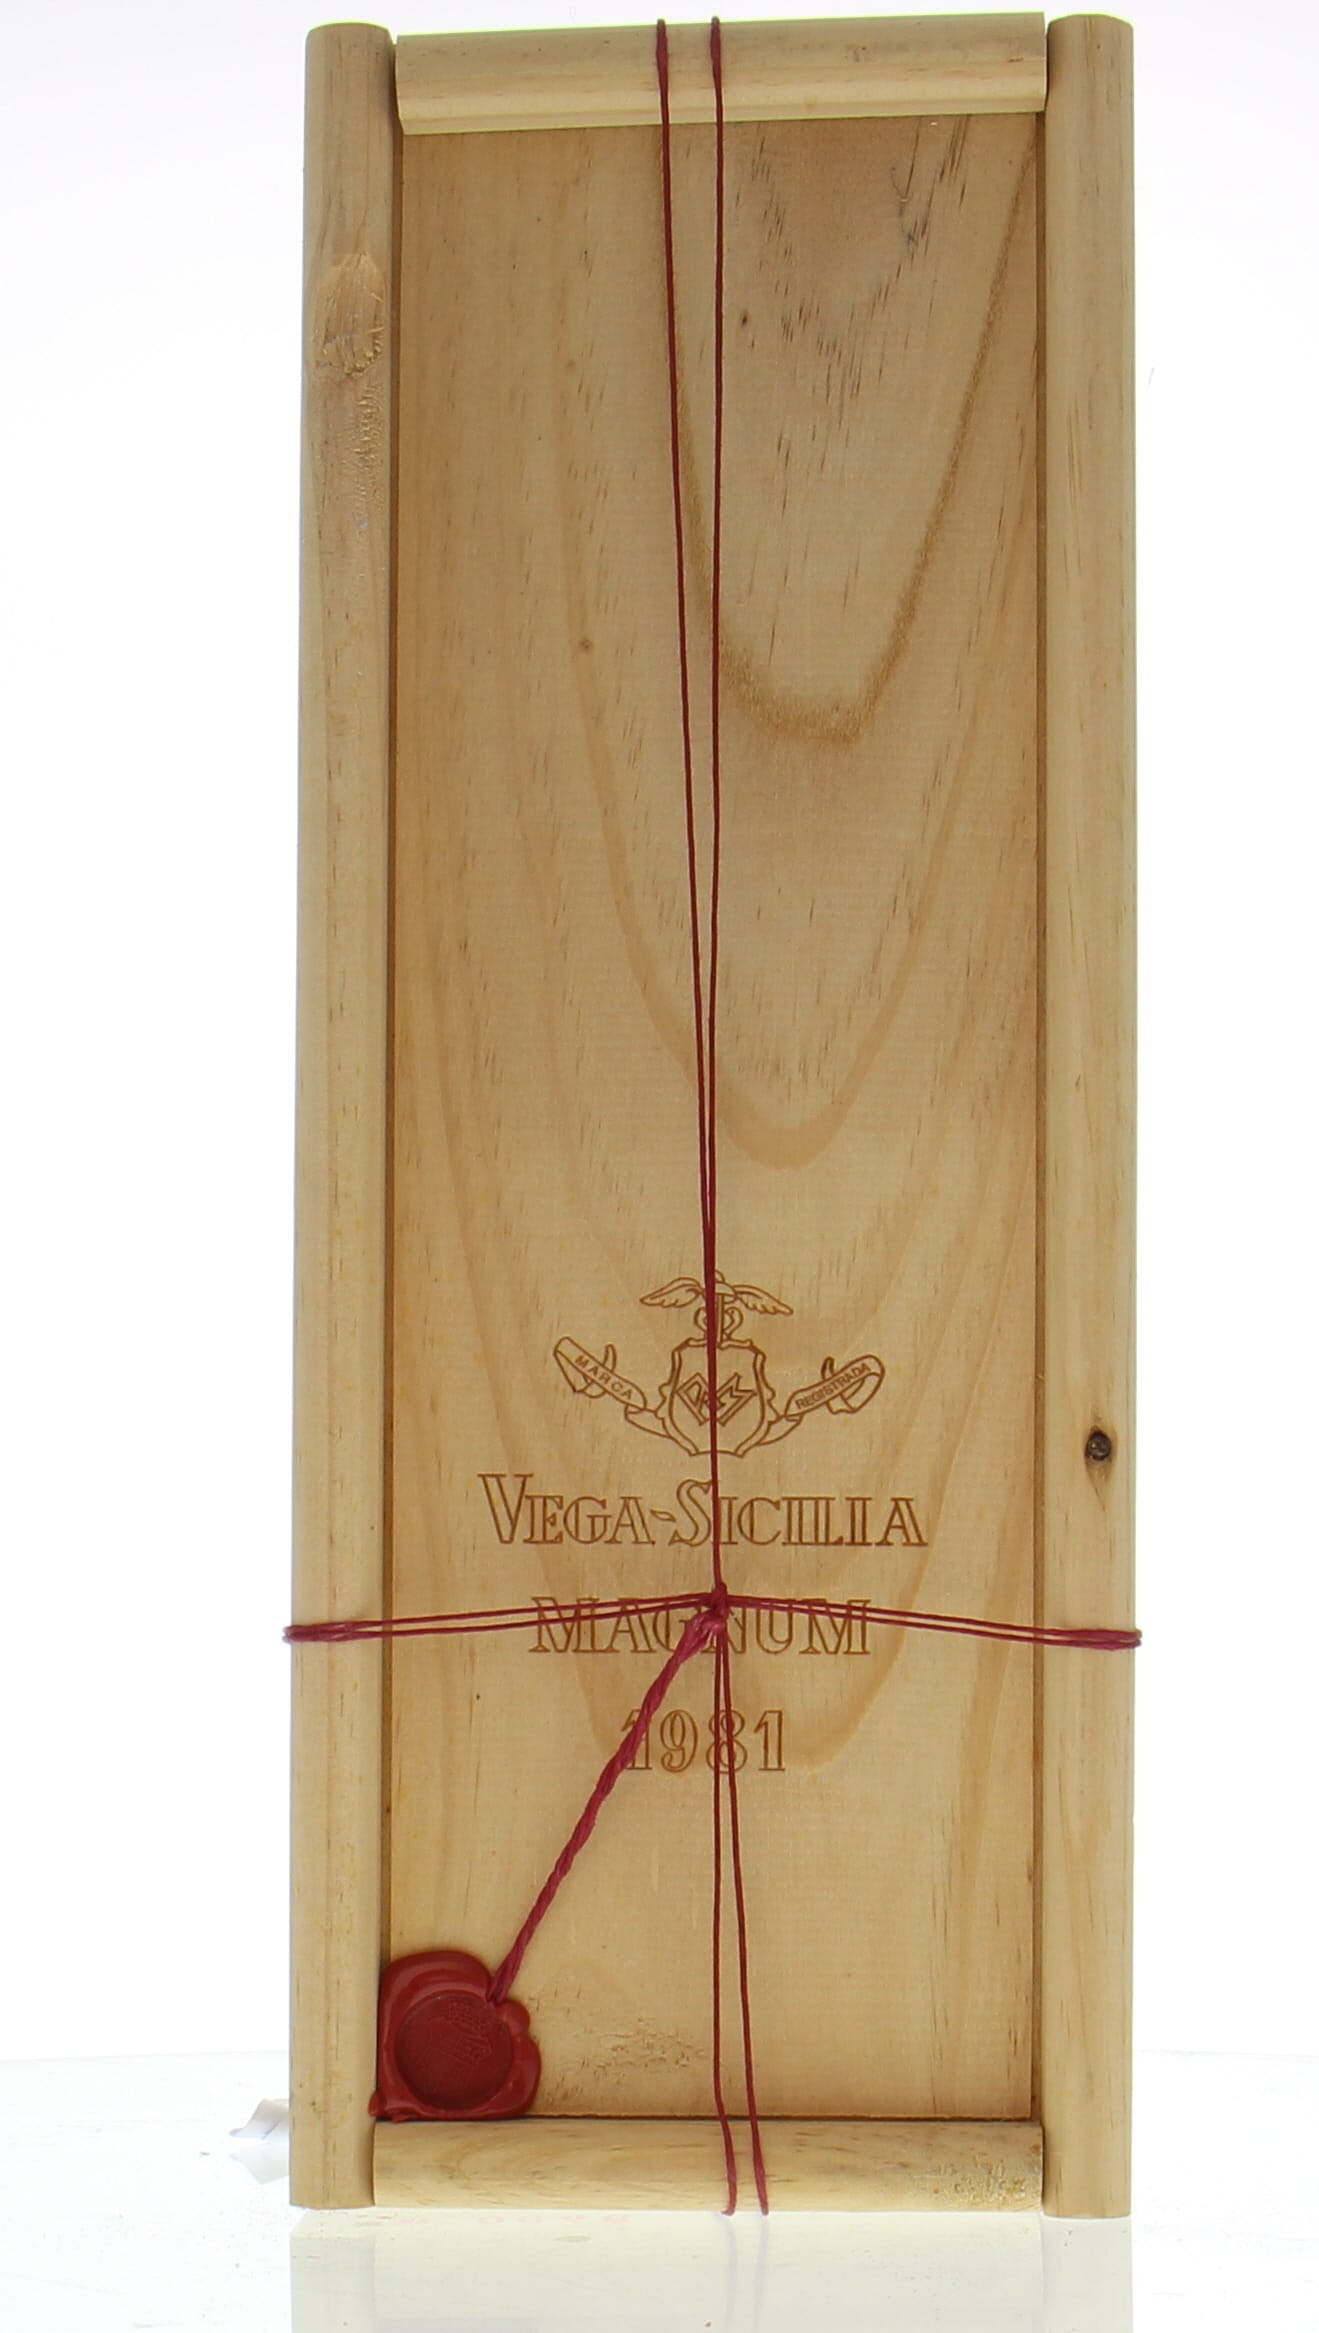 Vega Sicilia - Unico 1981 From Original Wooden Case